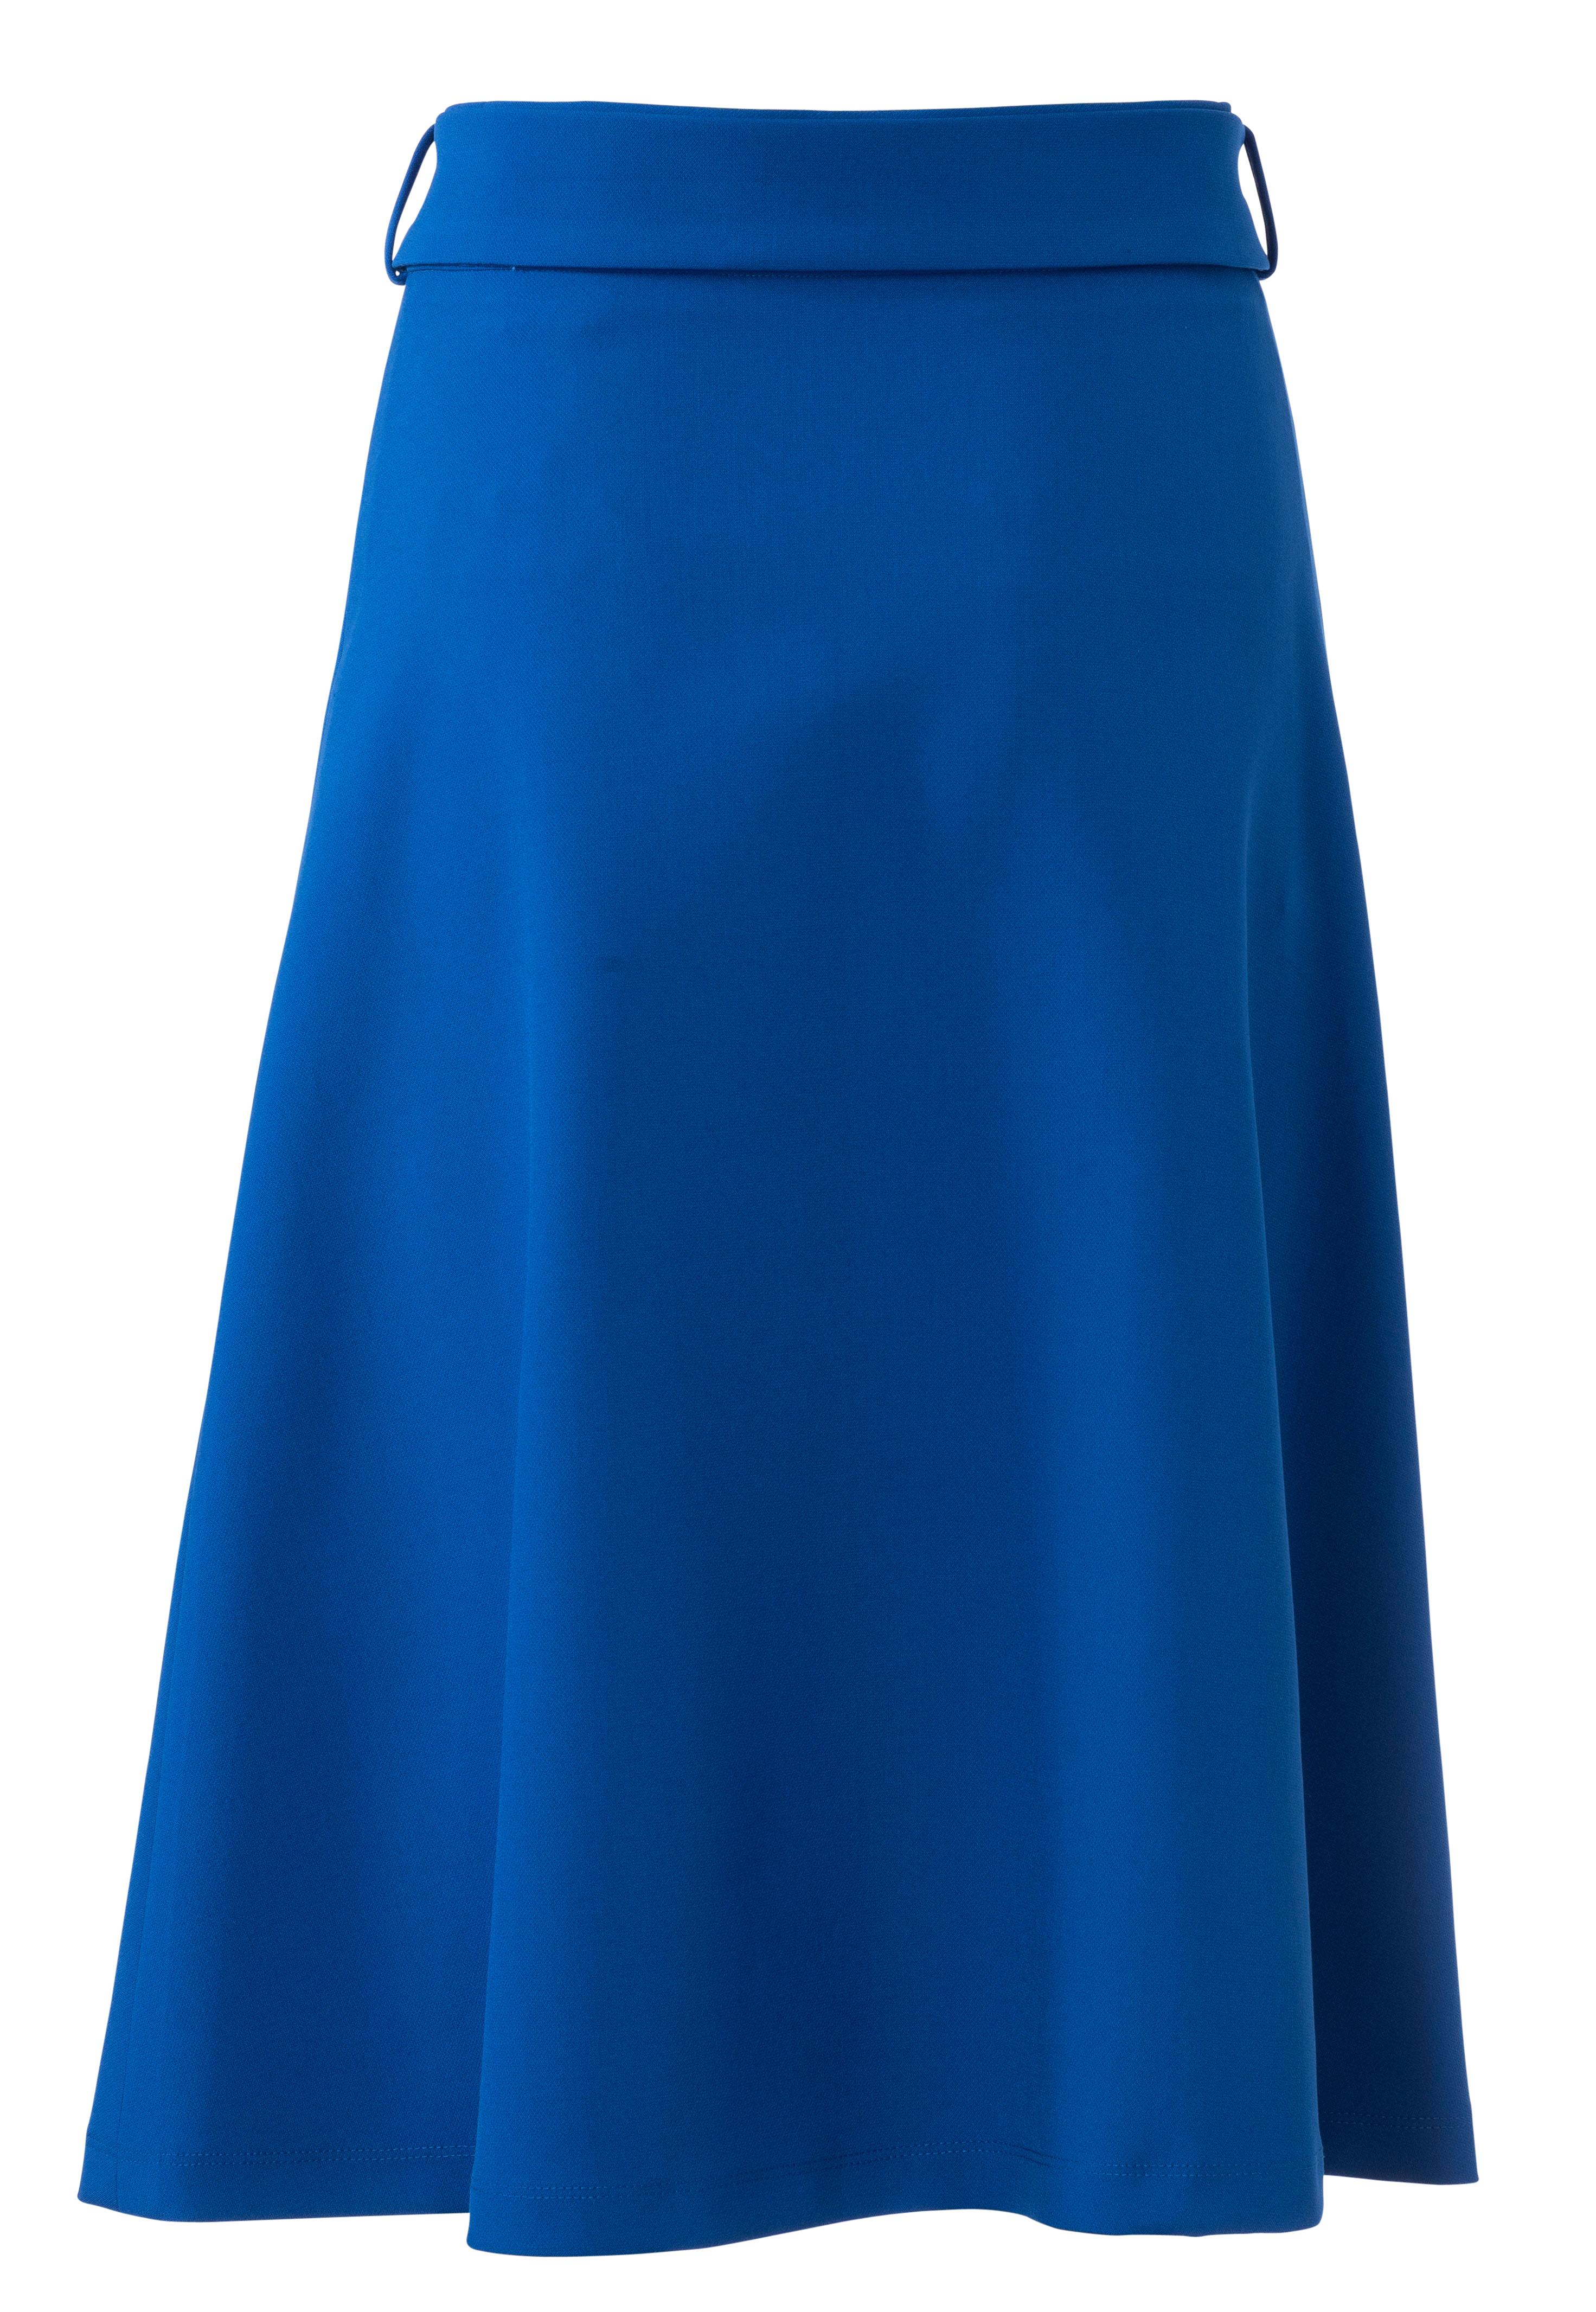 Burda B6247 Skirt with Pleats Sewing Pattern